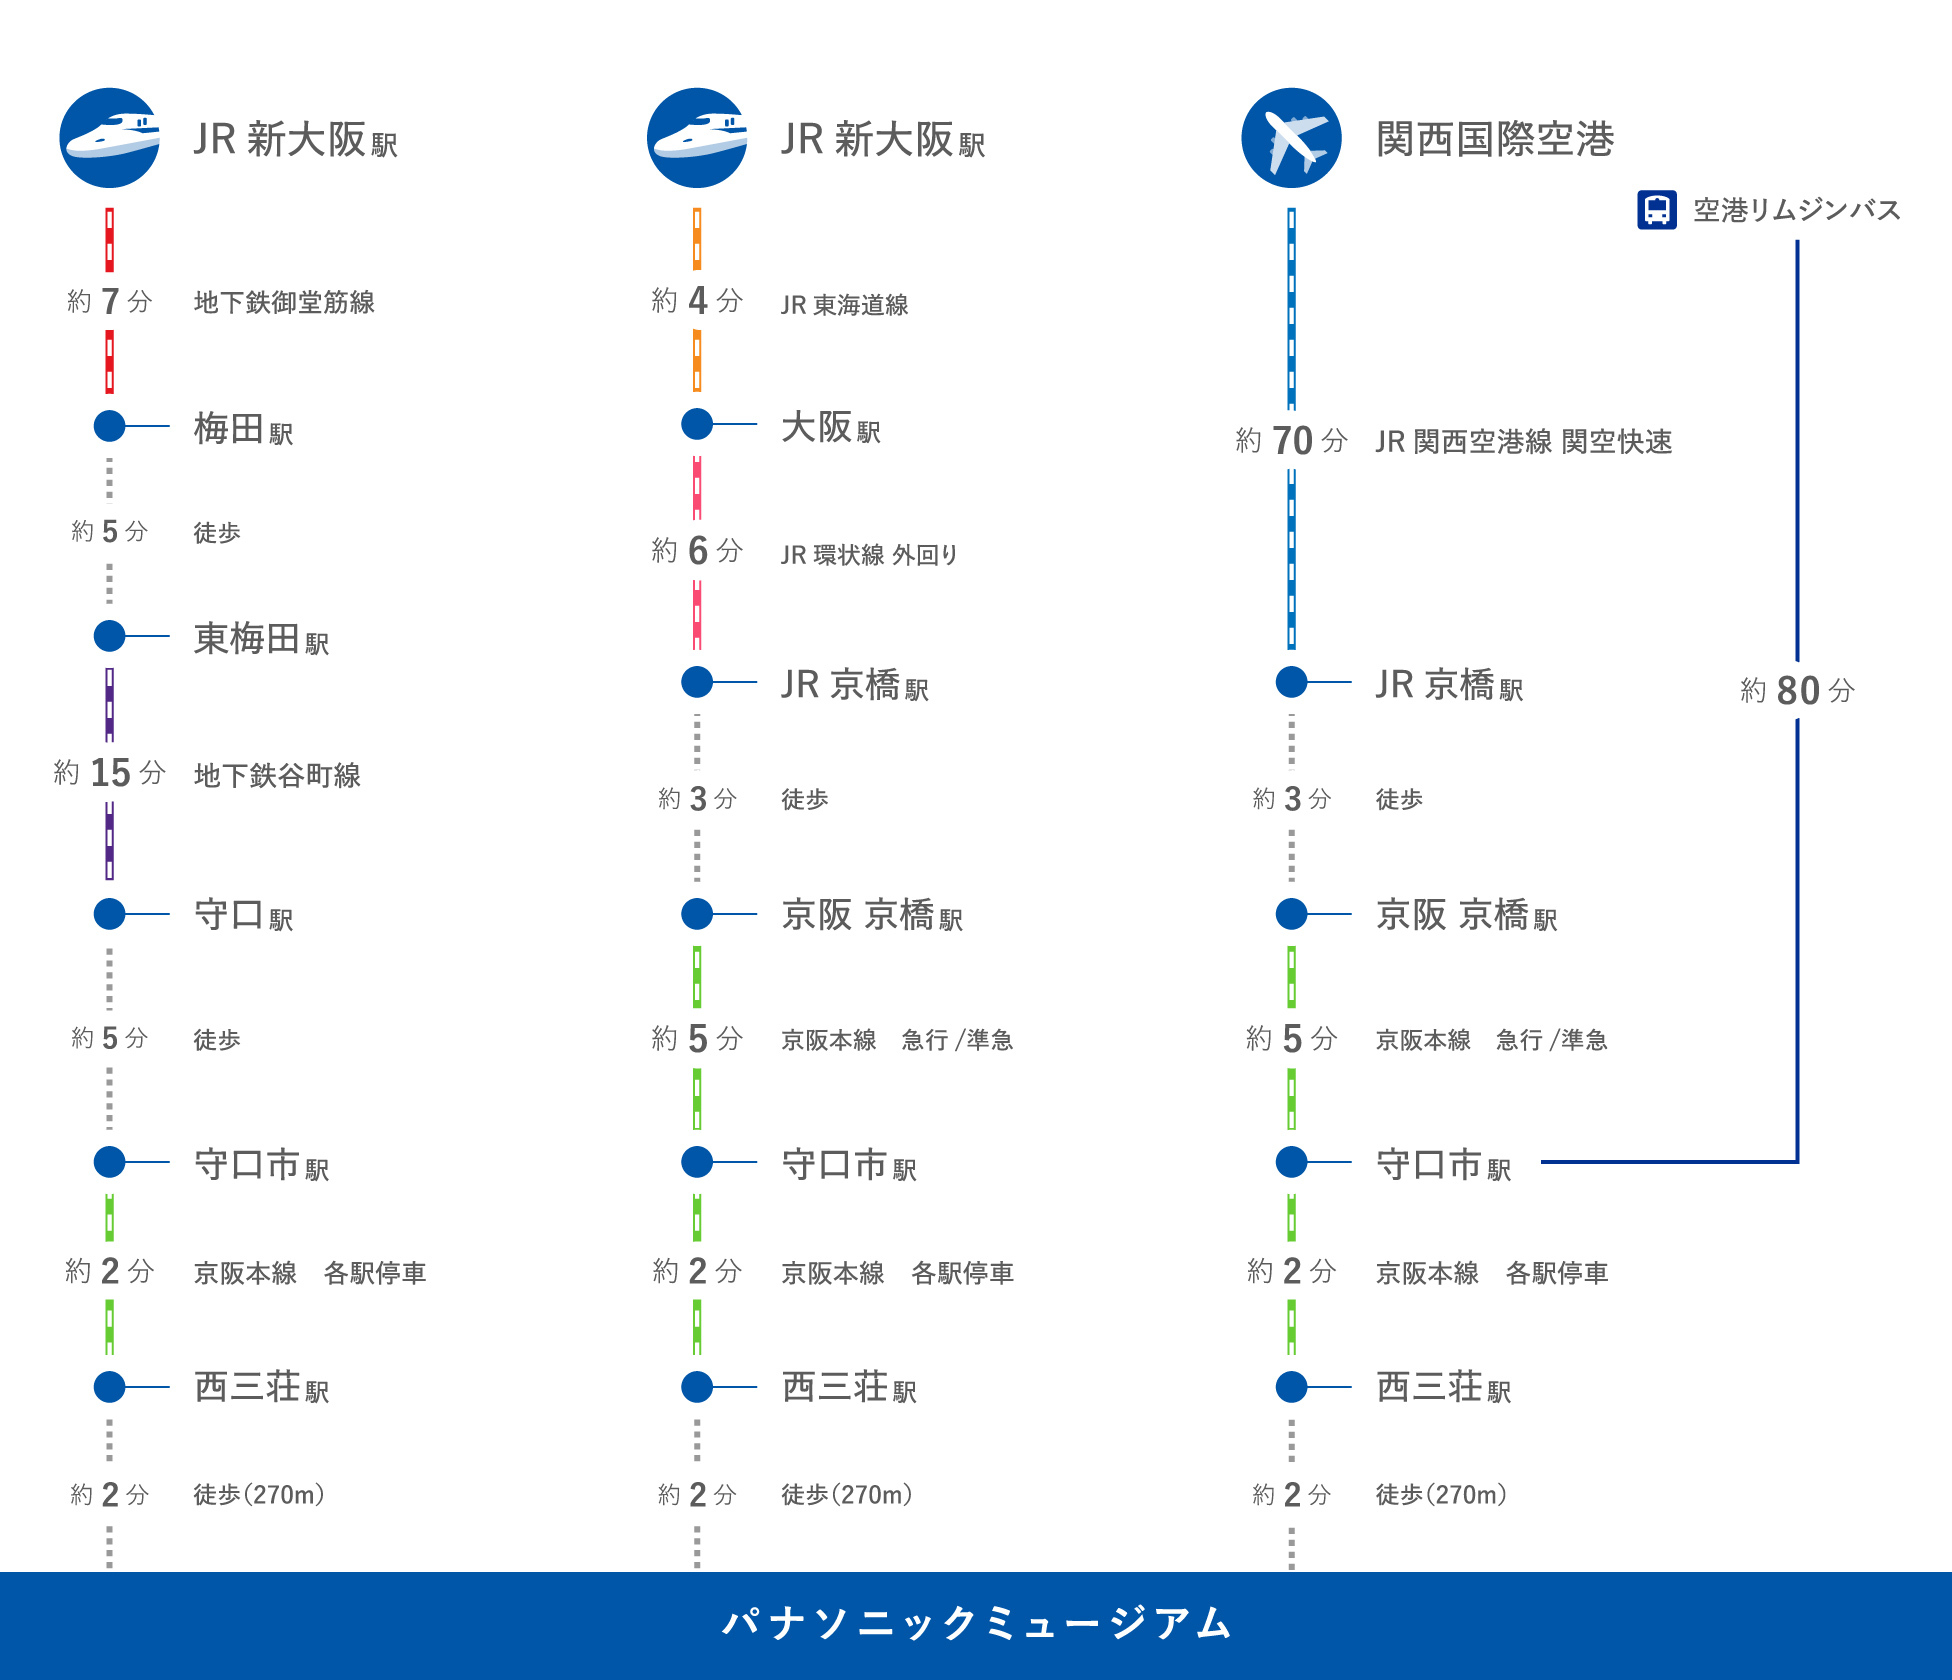 新幹線でJR新大阪駅から在来線に乗り換え、約4分で大阪駅につきます。大阪環状線の外回りに乗り、約6分で京橋駅につきます。徒歩3分ほどにある京阪京橋駅で、京都方面の京阪電車に乗り換えます。区間急行で約10分、西三荘駅で下車します。京橋から準急に乗車した場合は途中の守口市駅で、各駅停車に乗り換えます。西三荘駅から、パナソニックミュージアムまでは徒歩約2分です。関西国際空港から、JRの関空快速に乗ると、約70分で京橋駅につきます。徒歩3分ほどにある京阪京橋駅で、京都方面の京阪電車に乗り換えます。区間急行に乗り約10分、西三荘駅で下車します。京橋から準急に乗車した場合は途中の守口市駅で、各駅停車に乗り換えます。西三荘駅から、パナソニックミュージアムまでは徒歩約2分です。なお、関西国際空港から守口市駅へ直通のリムジンバスに乗ると約80分で守口市駅につきます。